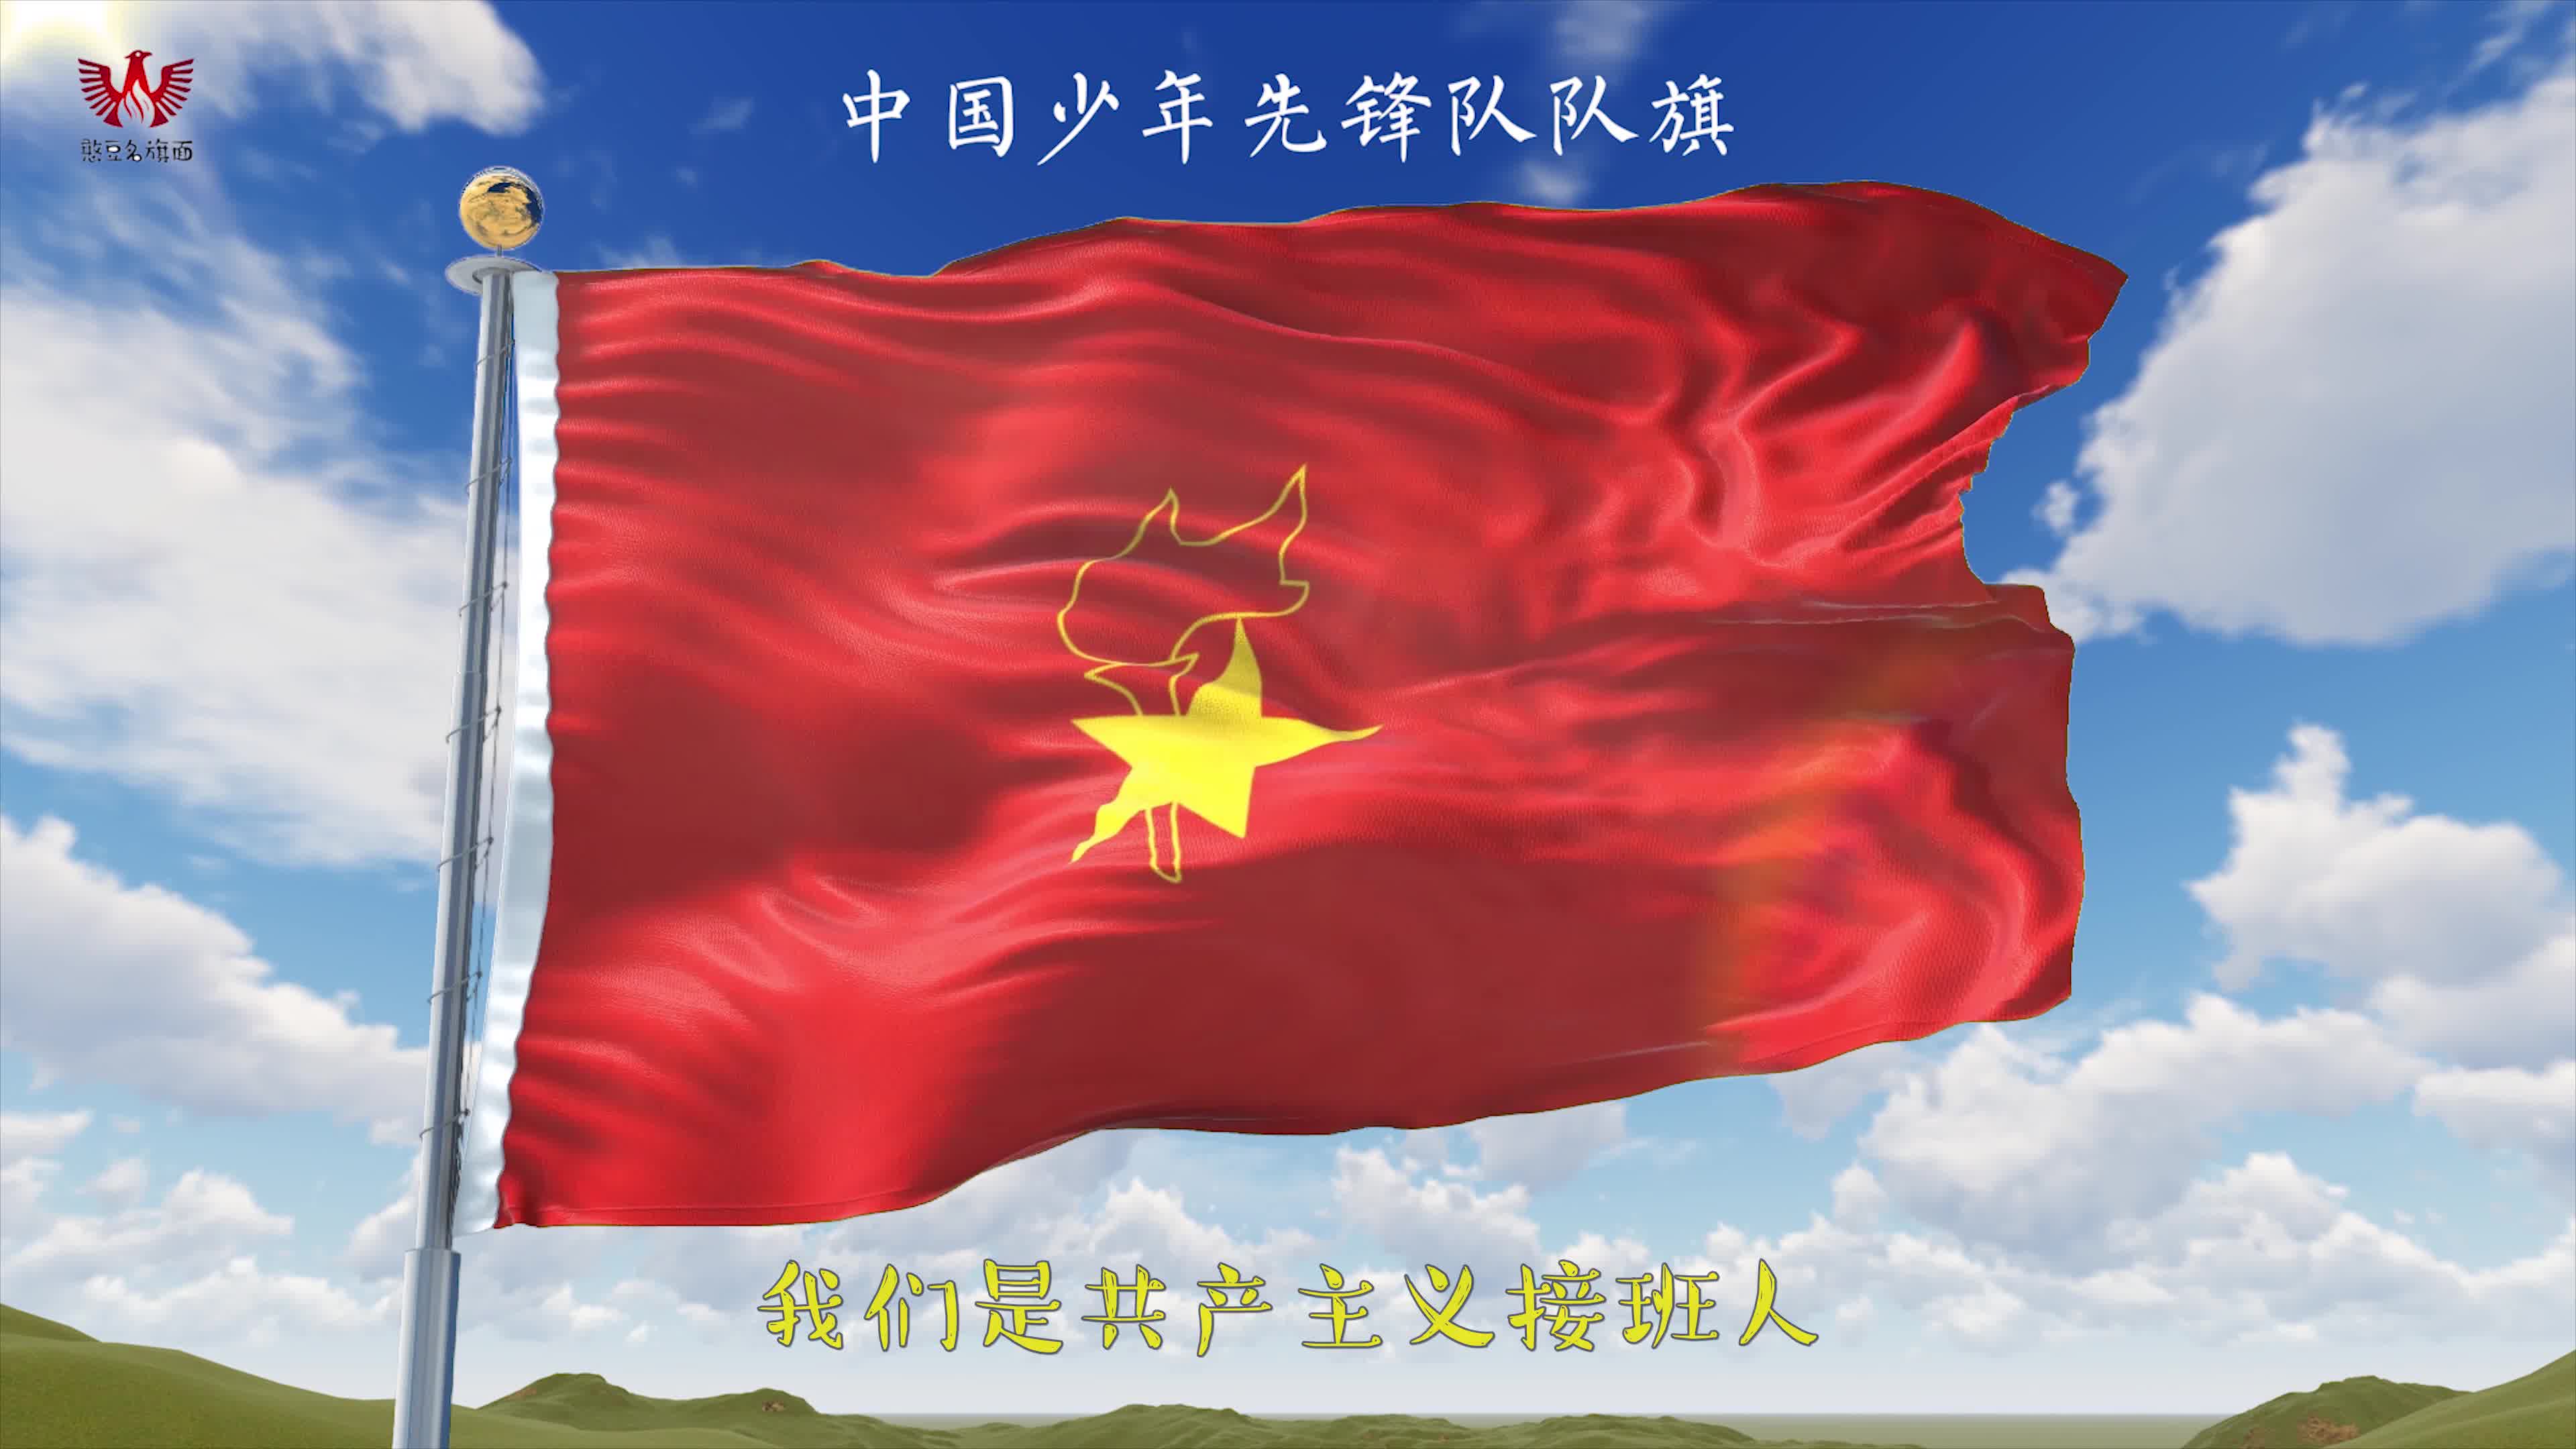 中国少年先锋队队旗队歌—我们是共产主义接班人